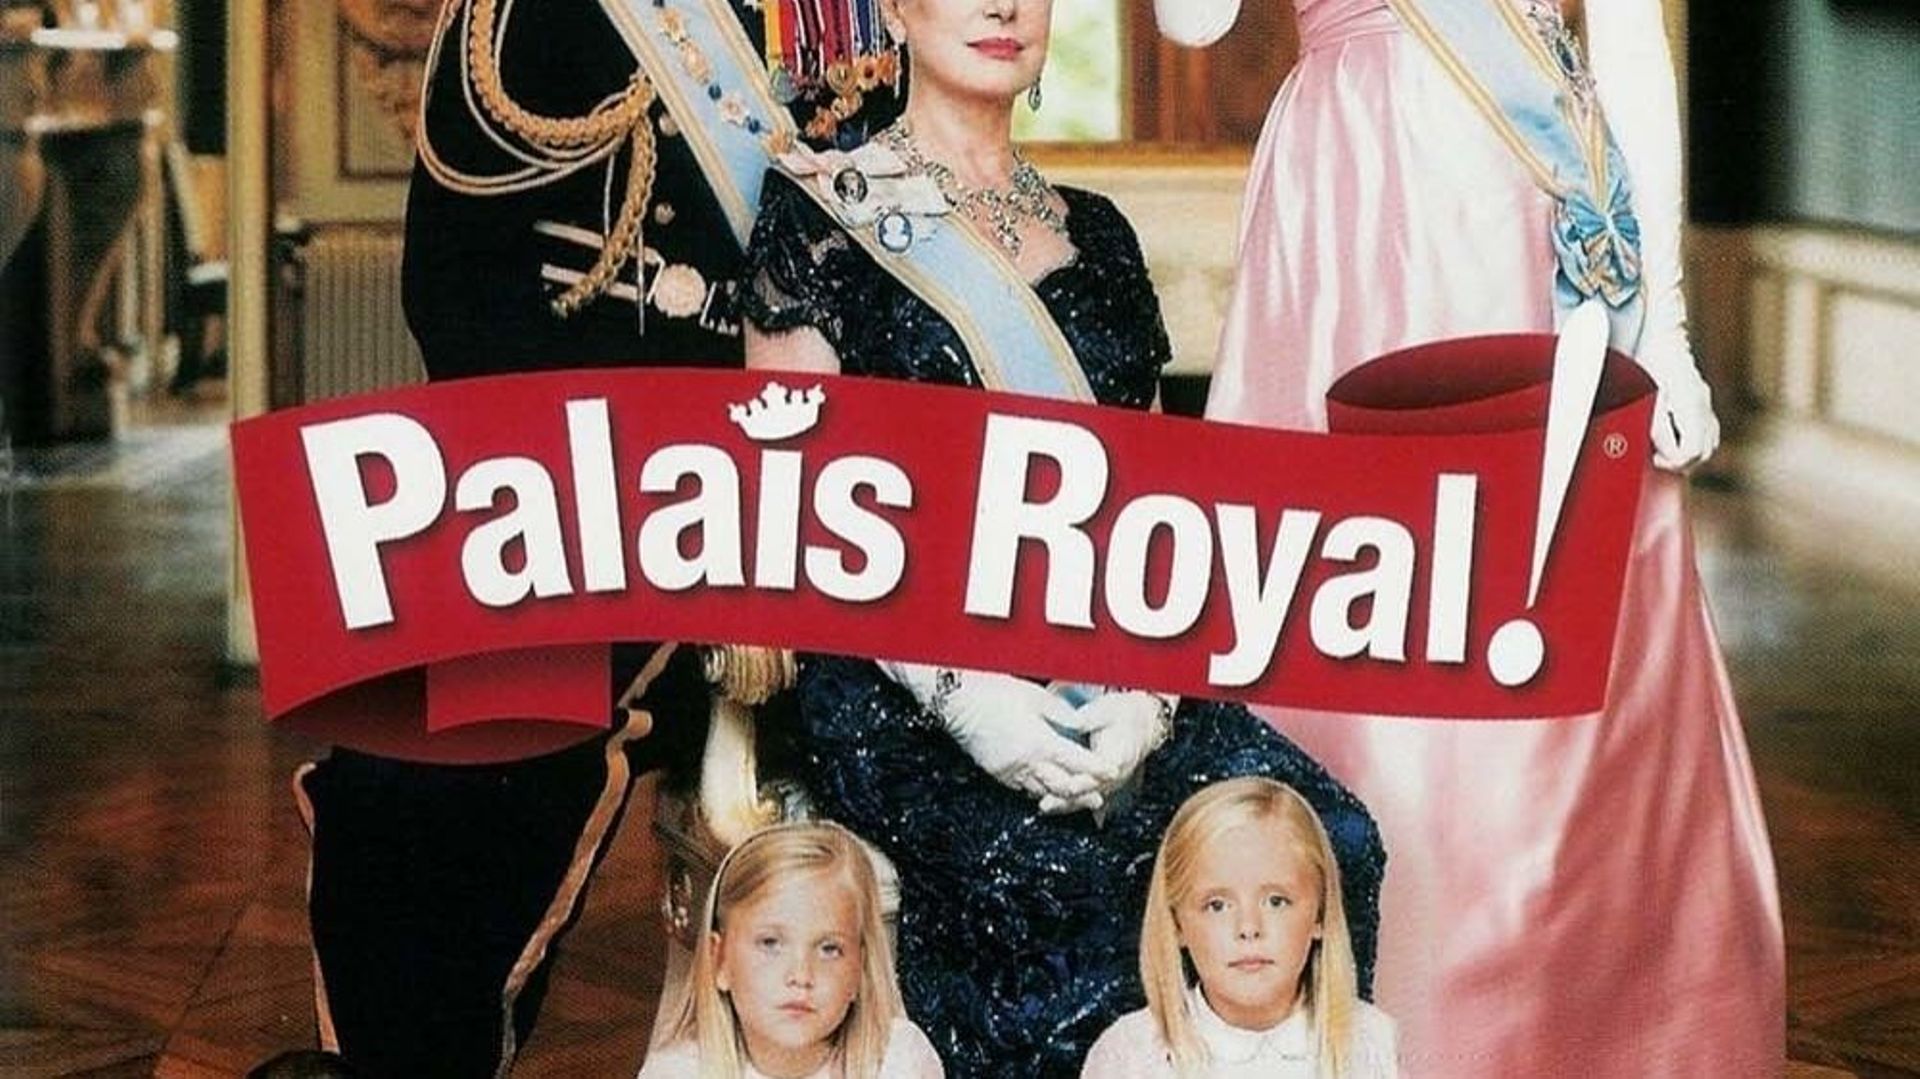 Affiche du film Palais Royal ! 2005